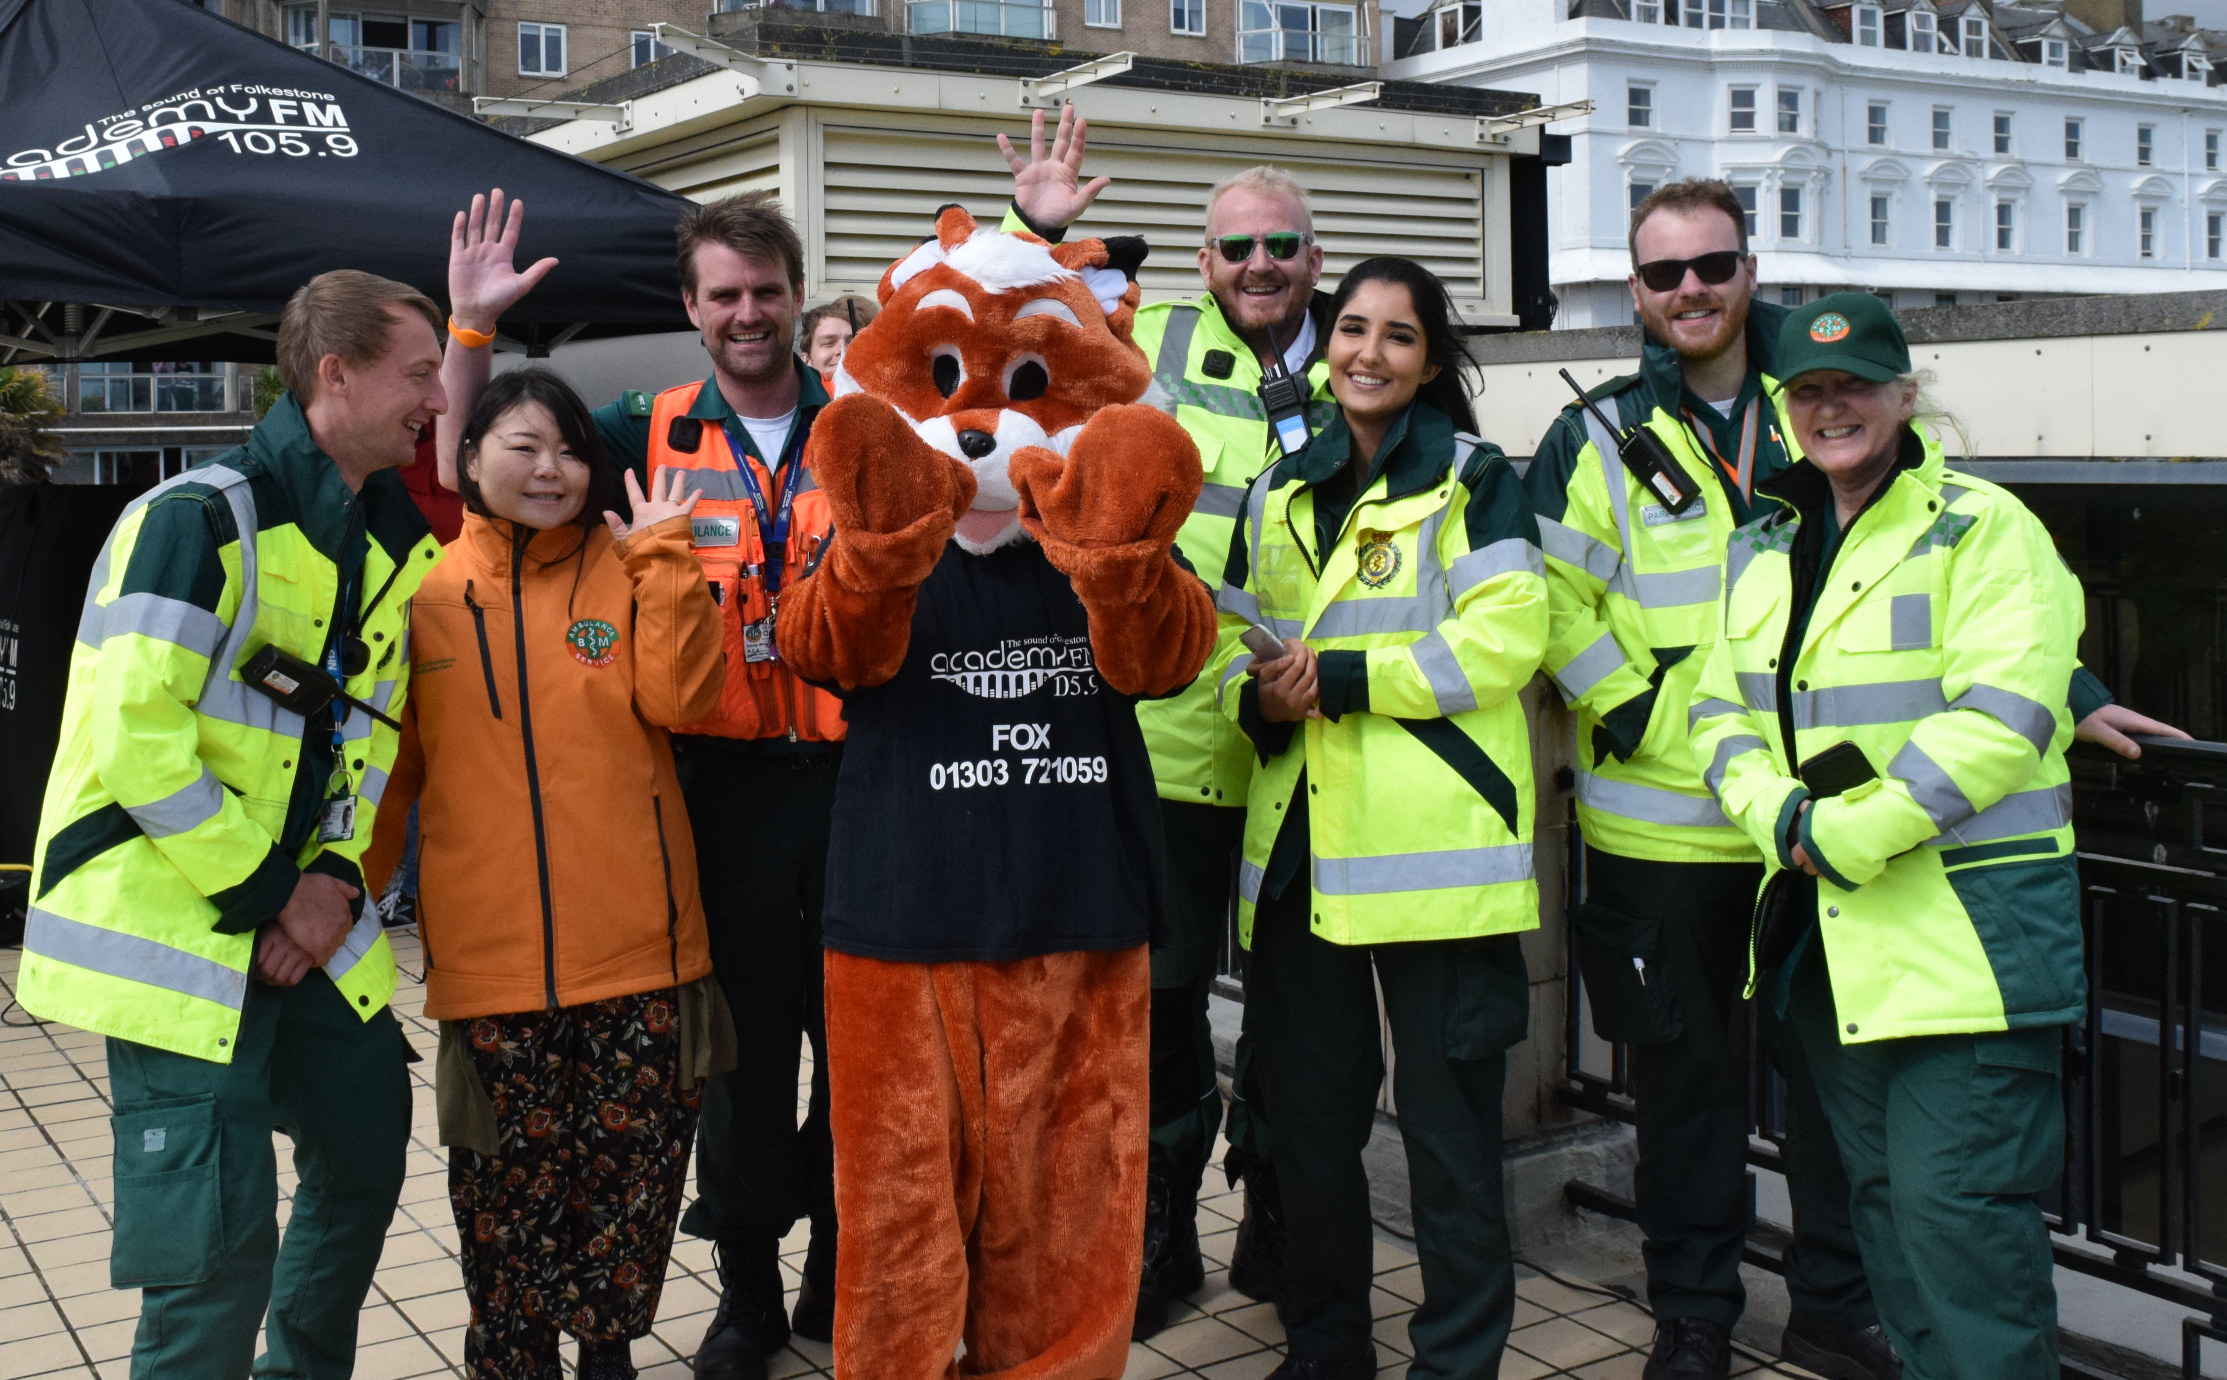 Folkestone Fox with Paramedics Academy FM Folkestone